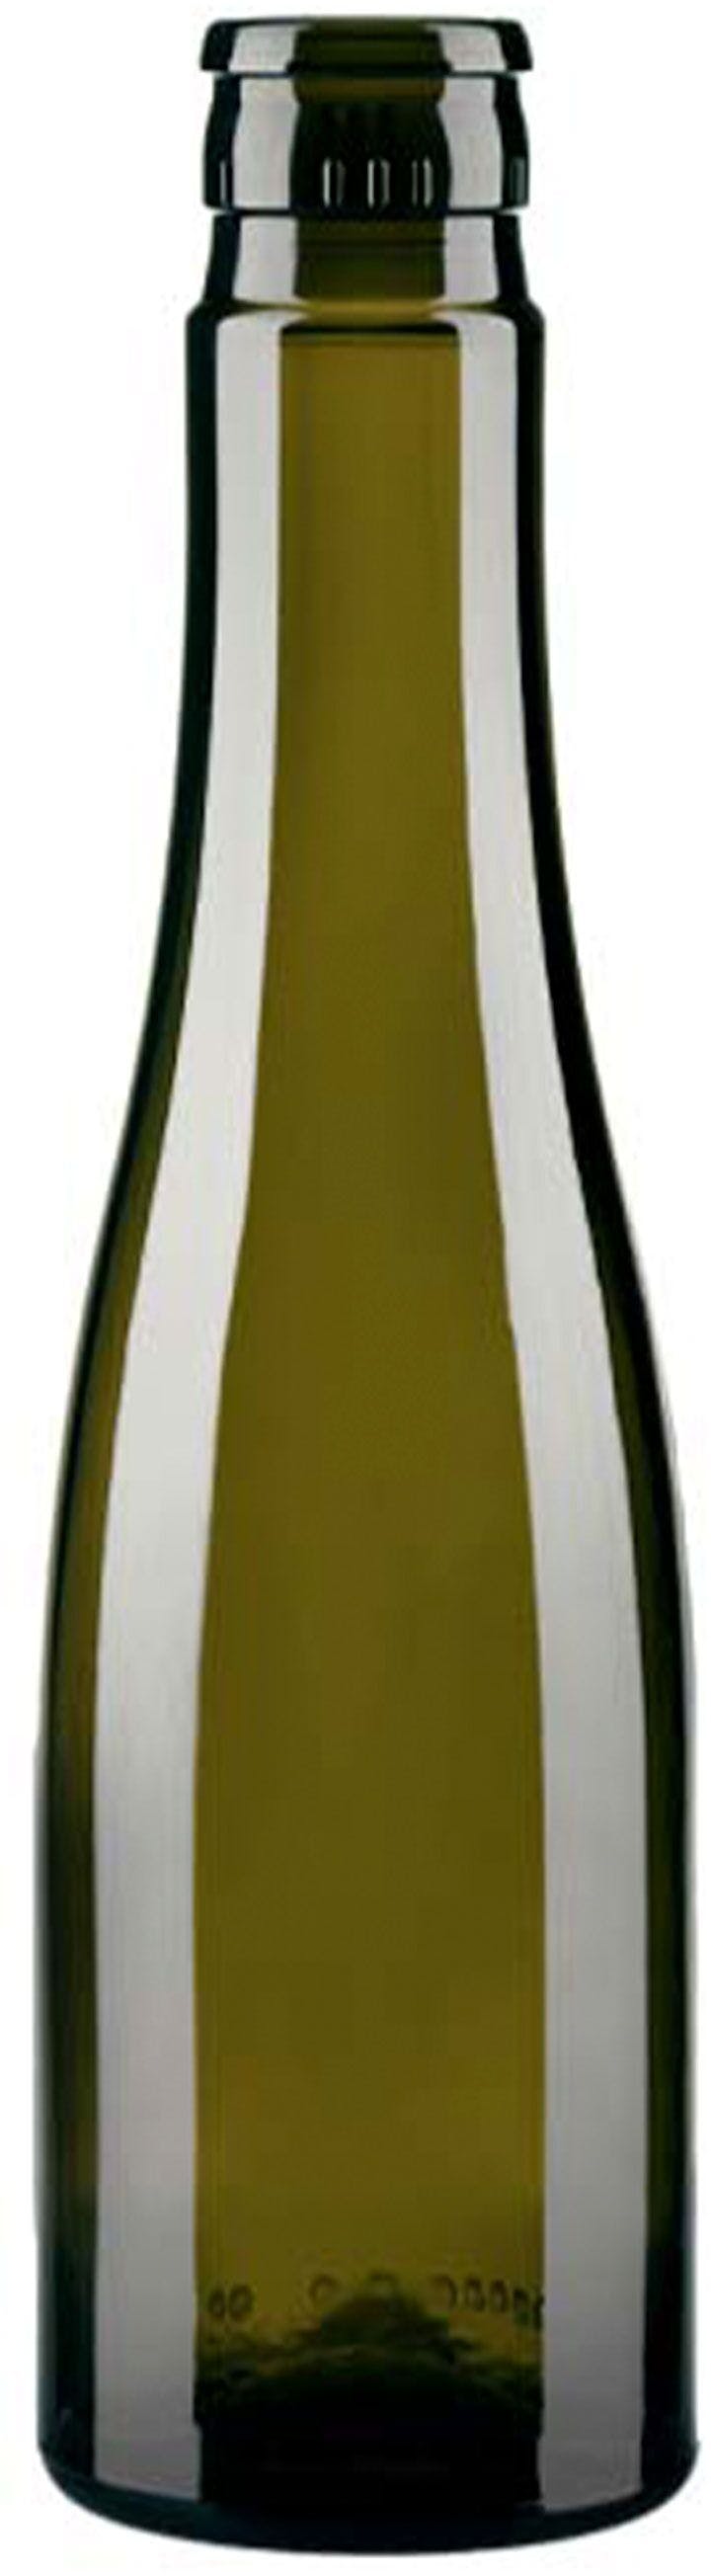 Bottiglia OLIO  REALE TOP 250 ml BG-Pressione